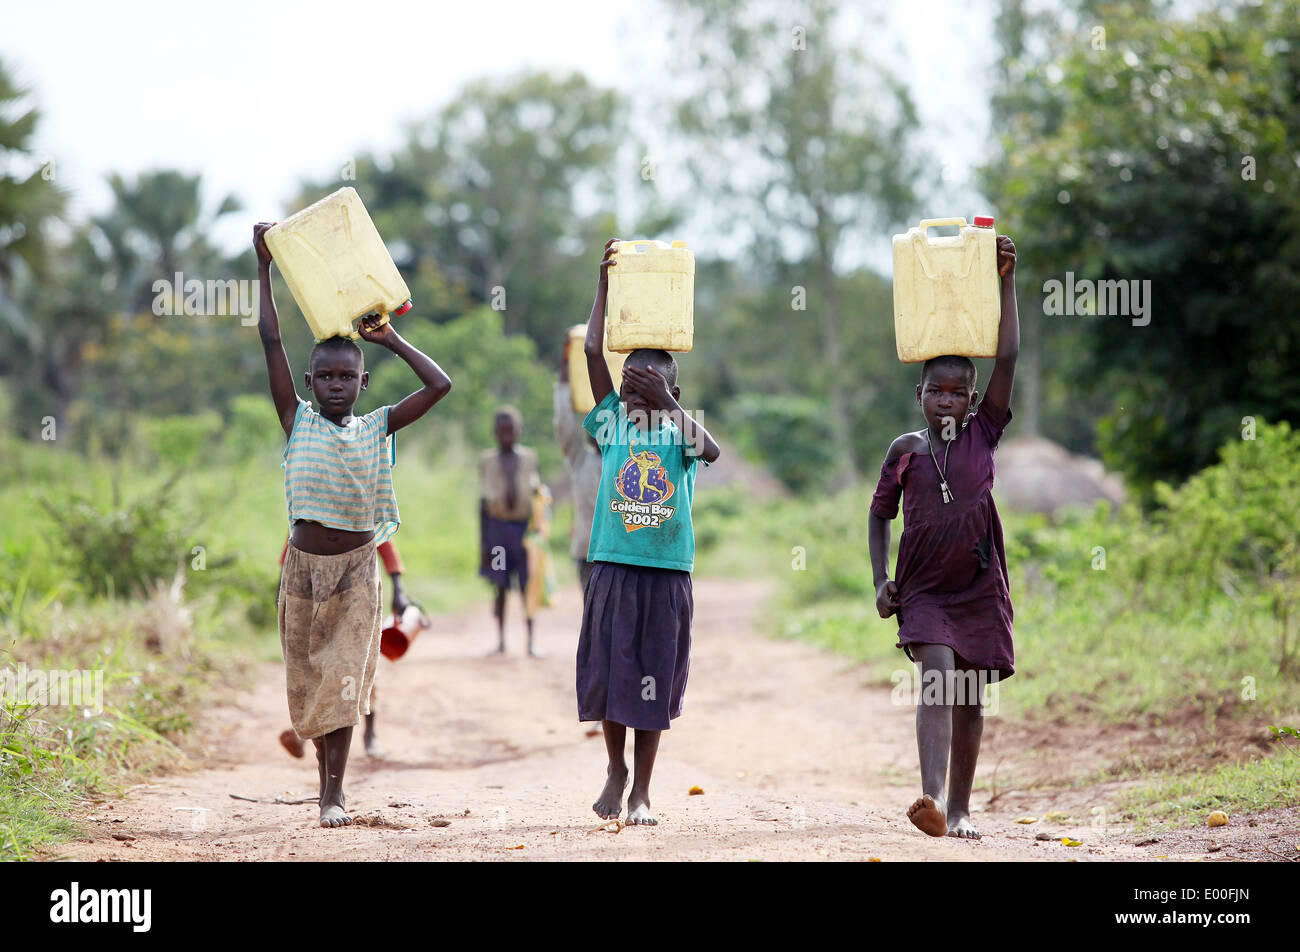 Los niños de la aldea joven termine su día recolectando agua sucia para sus familias en el distrito de Lira, en el norte de Uganda Foto de stock